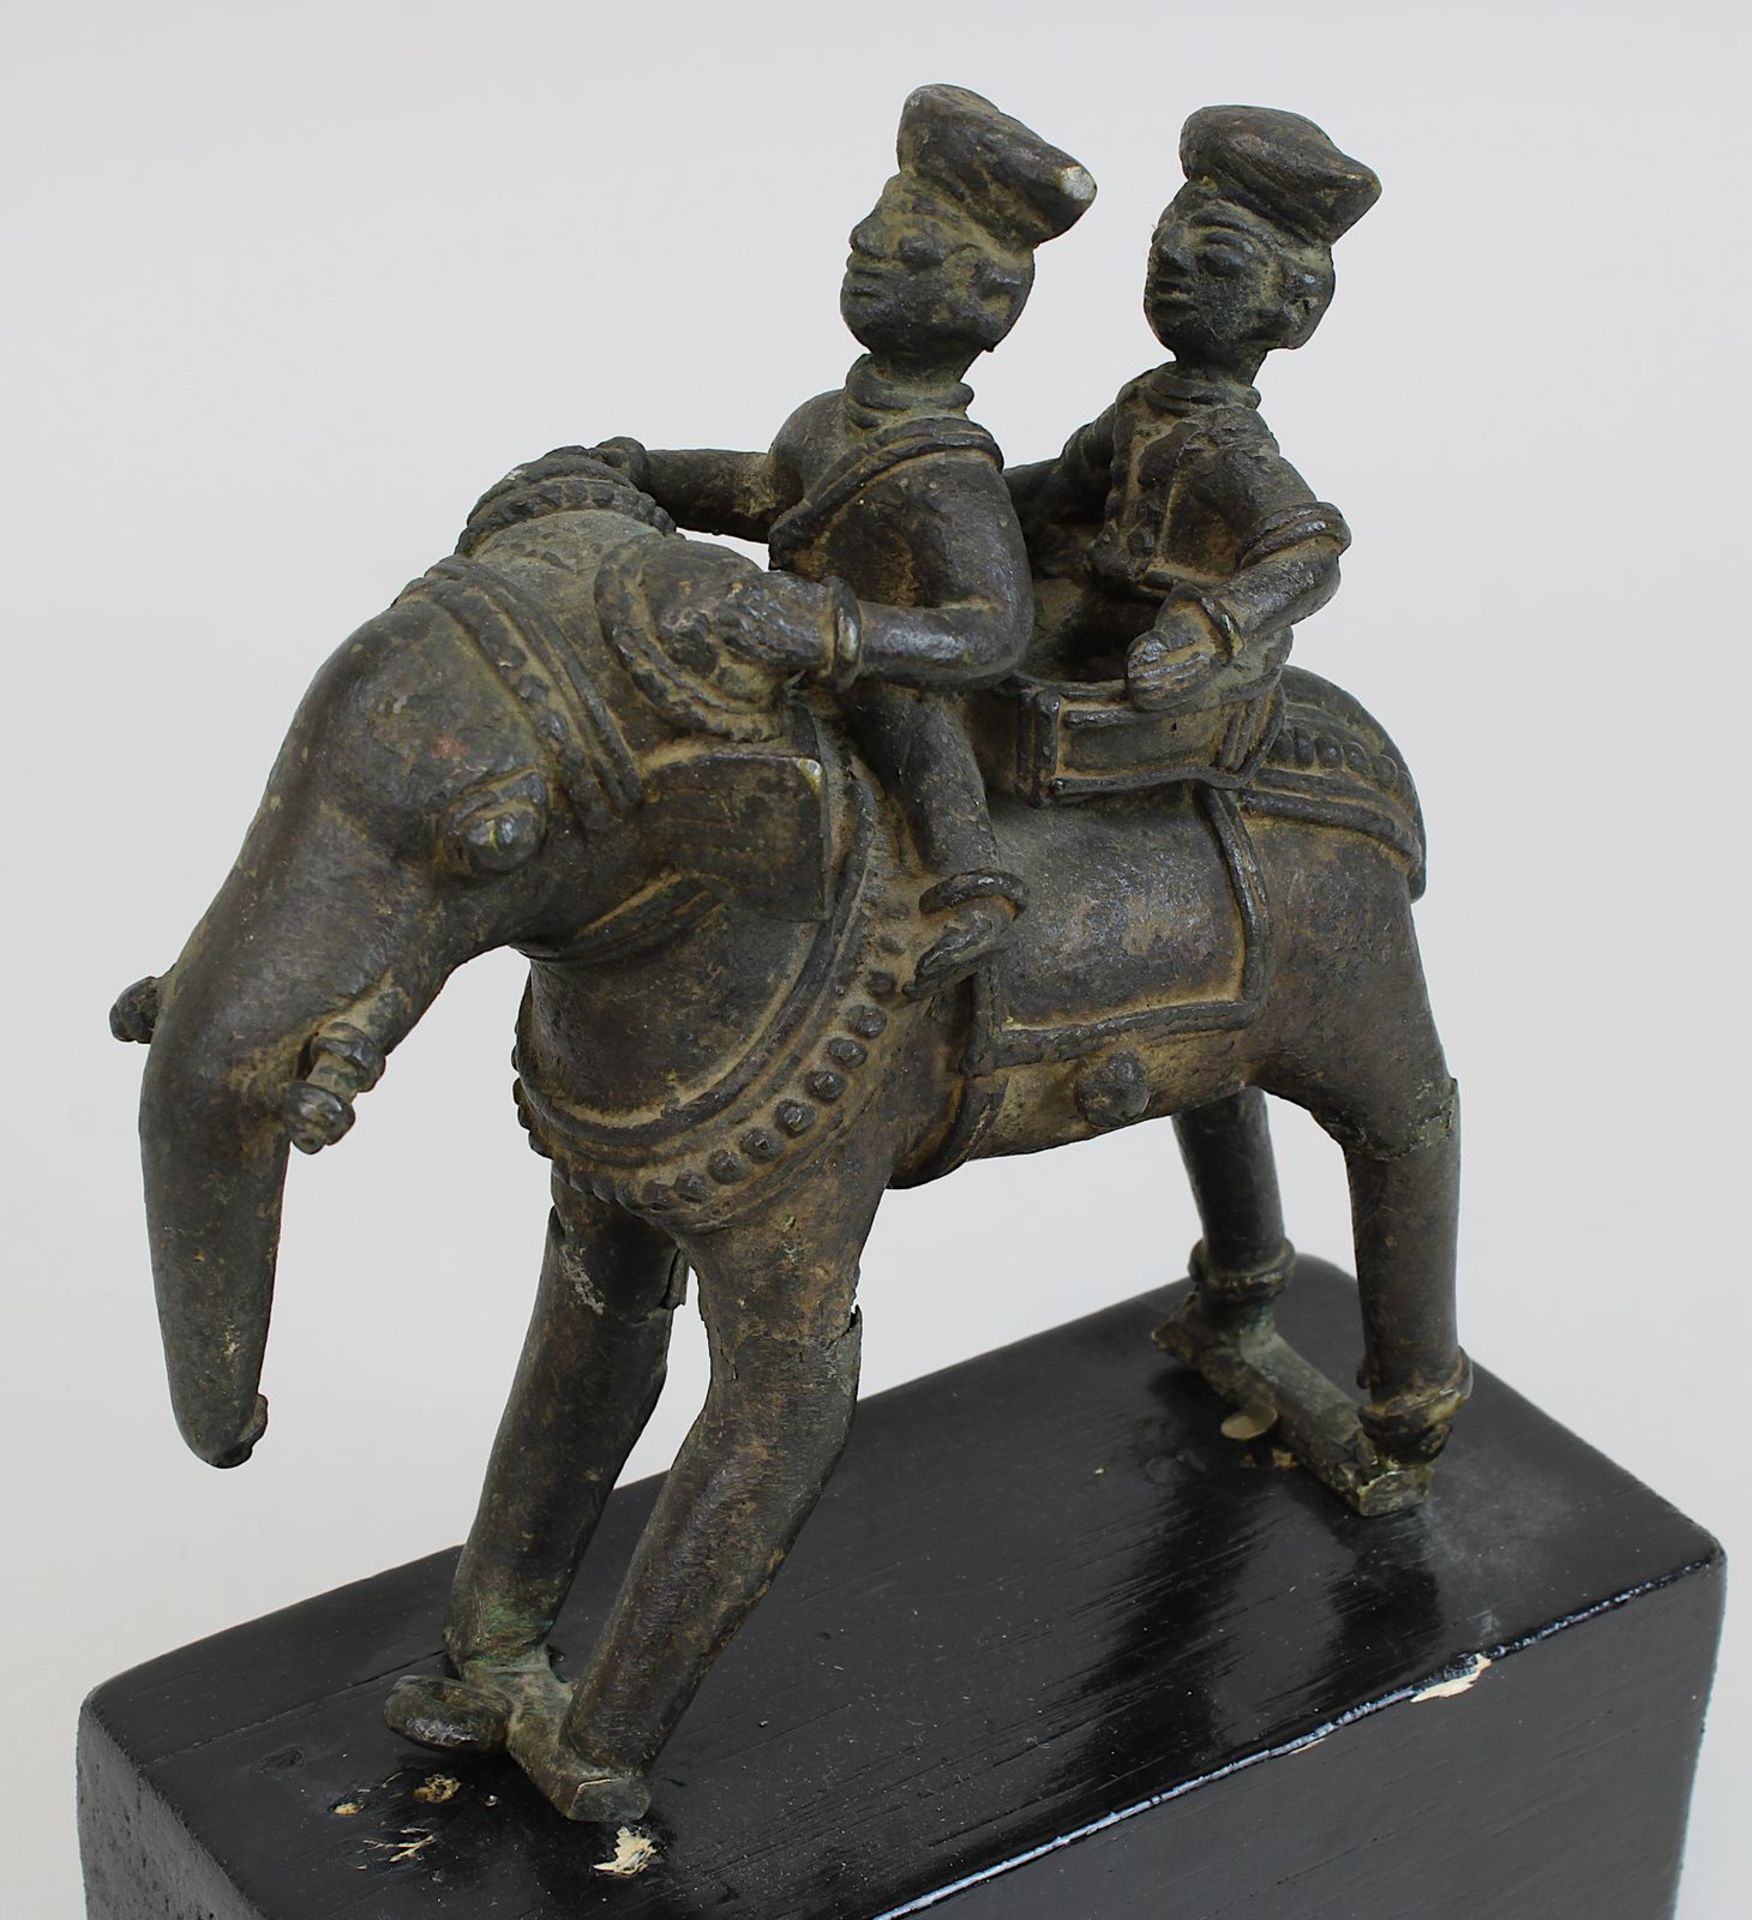 Elefanten-Figur mit 2 Reitern, Rajasthan/Indien, Bronze in der verlorenen Form gegossen, schöne - Image 2 of 2